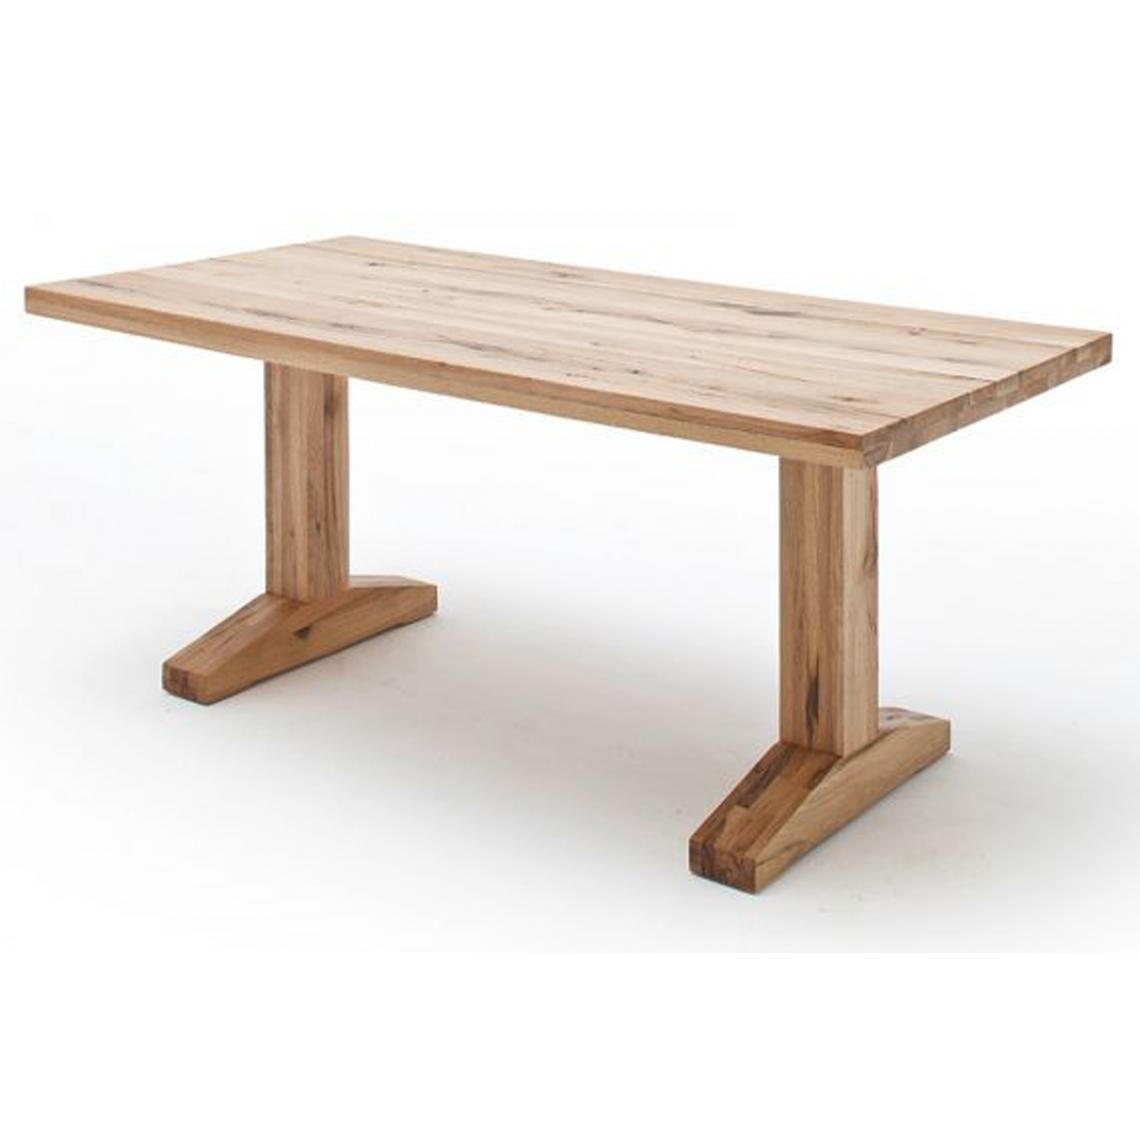 Pegane - Table à manger en chêne sauvage, laqué mat massif - L.180 x H.76 x P.90 cm - Tables à manger